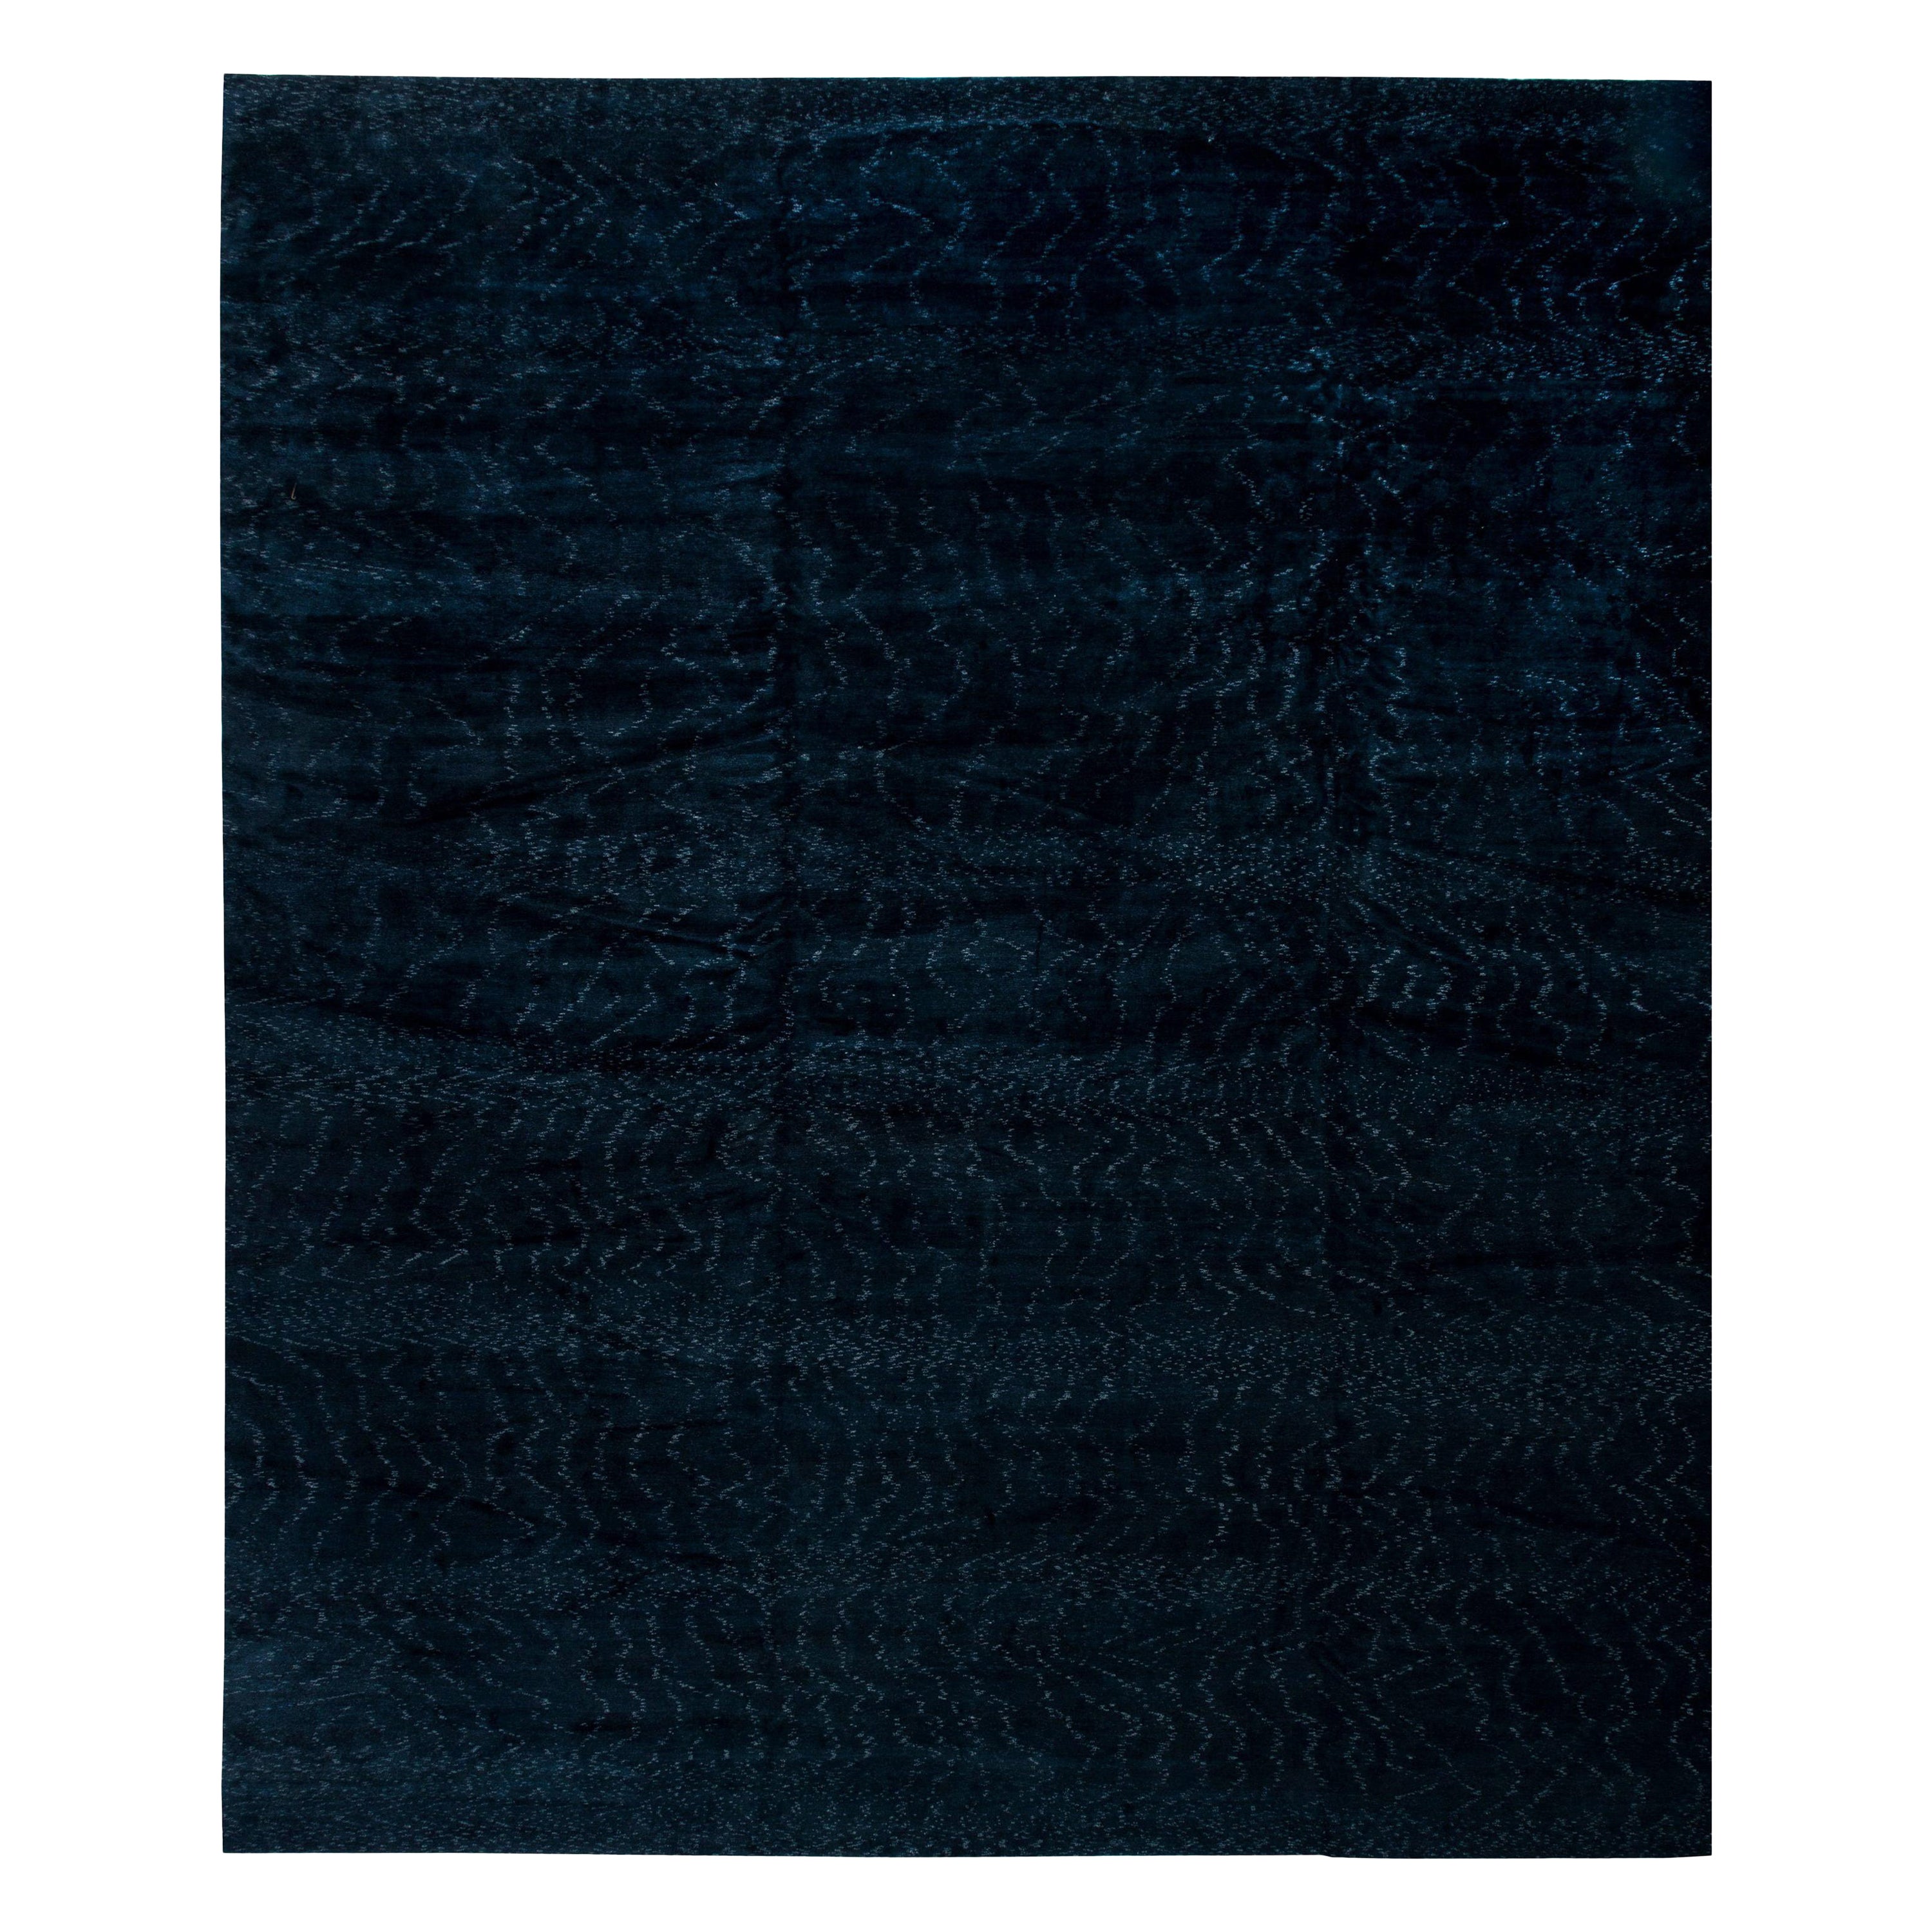 High-Quality Contemporary Midnight Blue Handmade Rug by Doris Leslie Blau